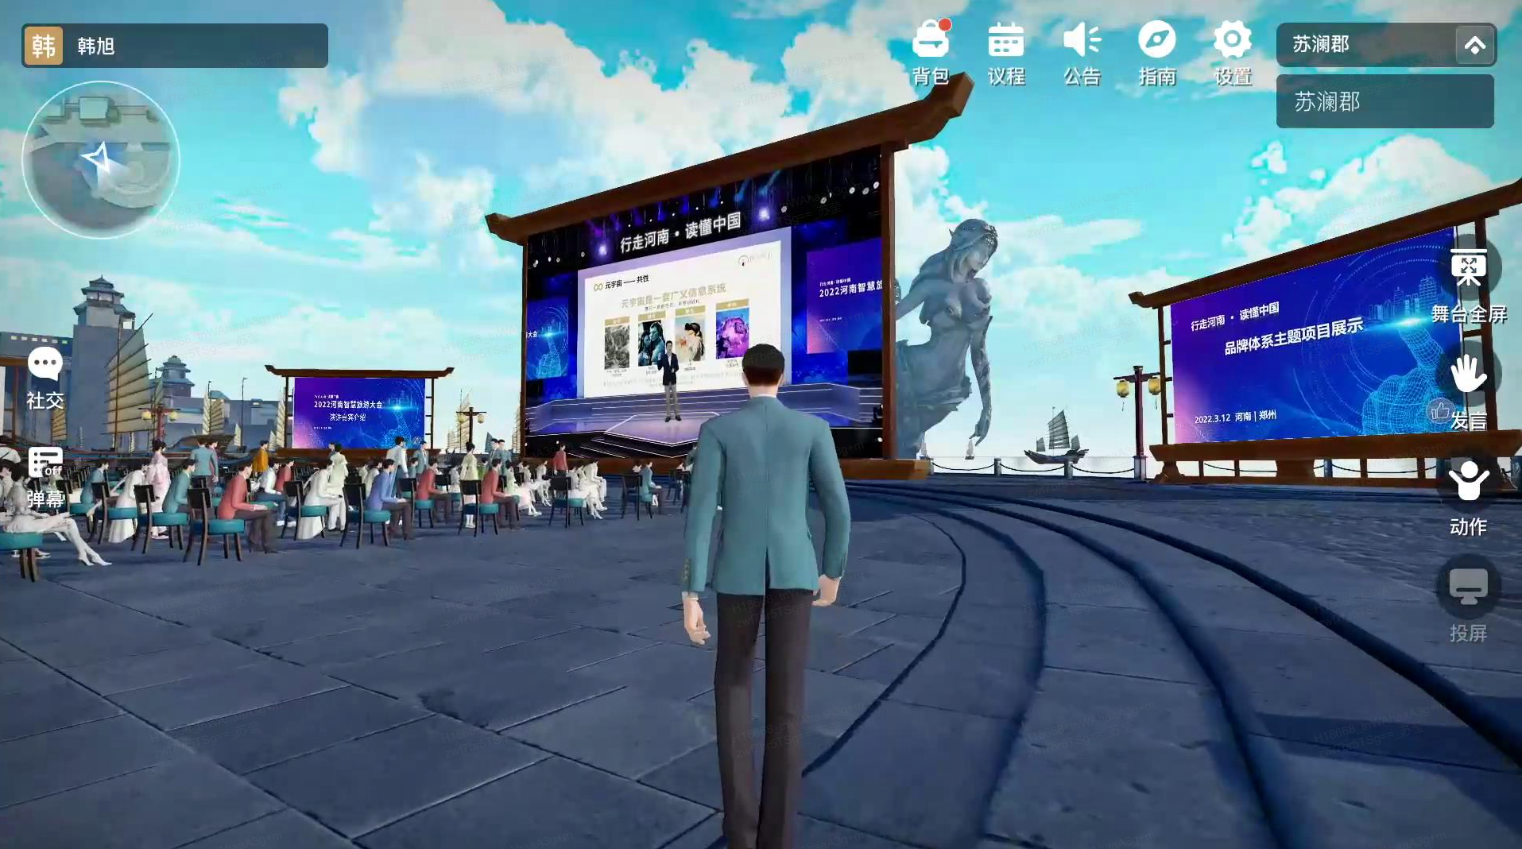 图片展示了一个三维虚拟现实场景，中间有一个穿西装的虚拟角色，周围是虚拟的观众和大型显示屏。